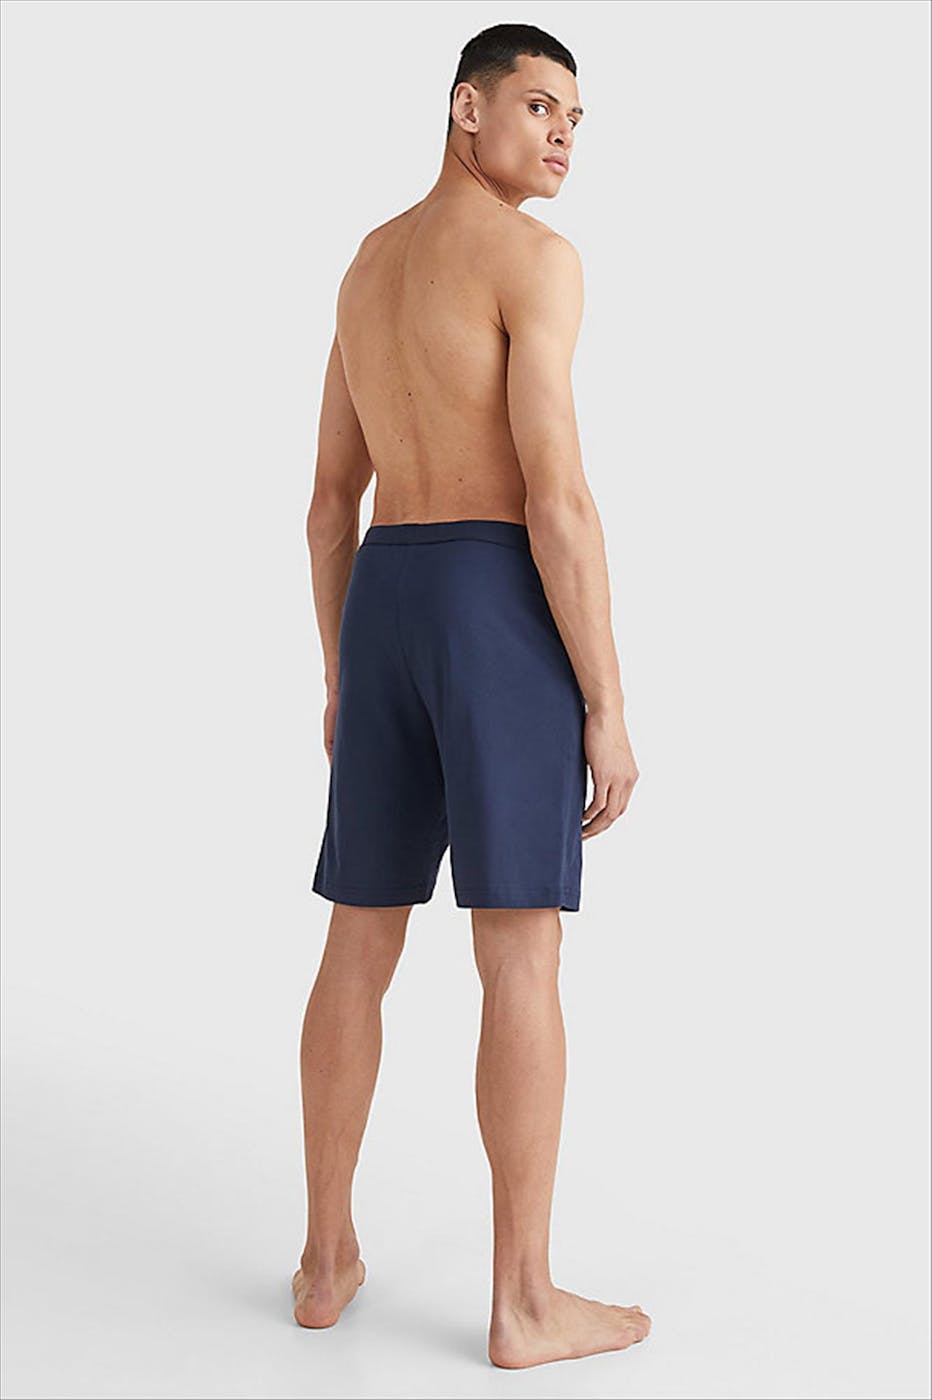 Tommy Hilfiger Underwear - Donkerblauwe Jersey short